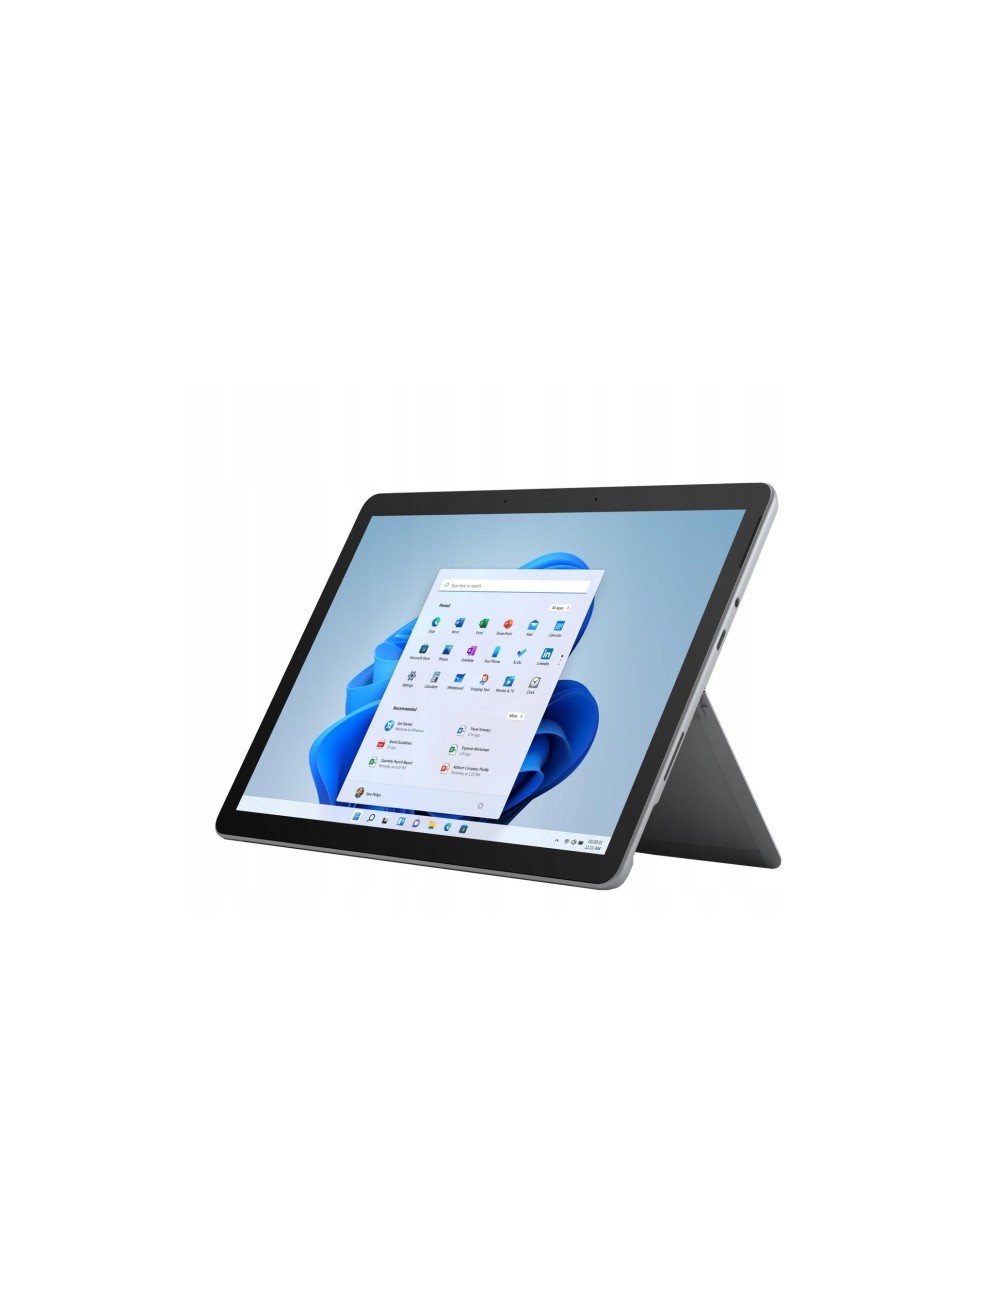 【純正キーボード付】Surface Go 4GB/64GB